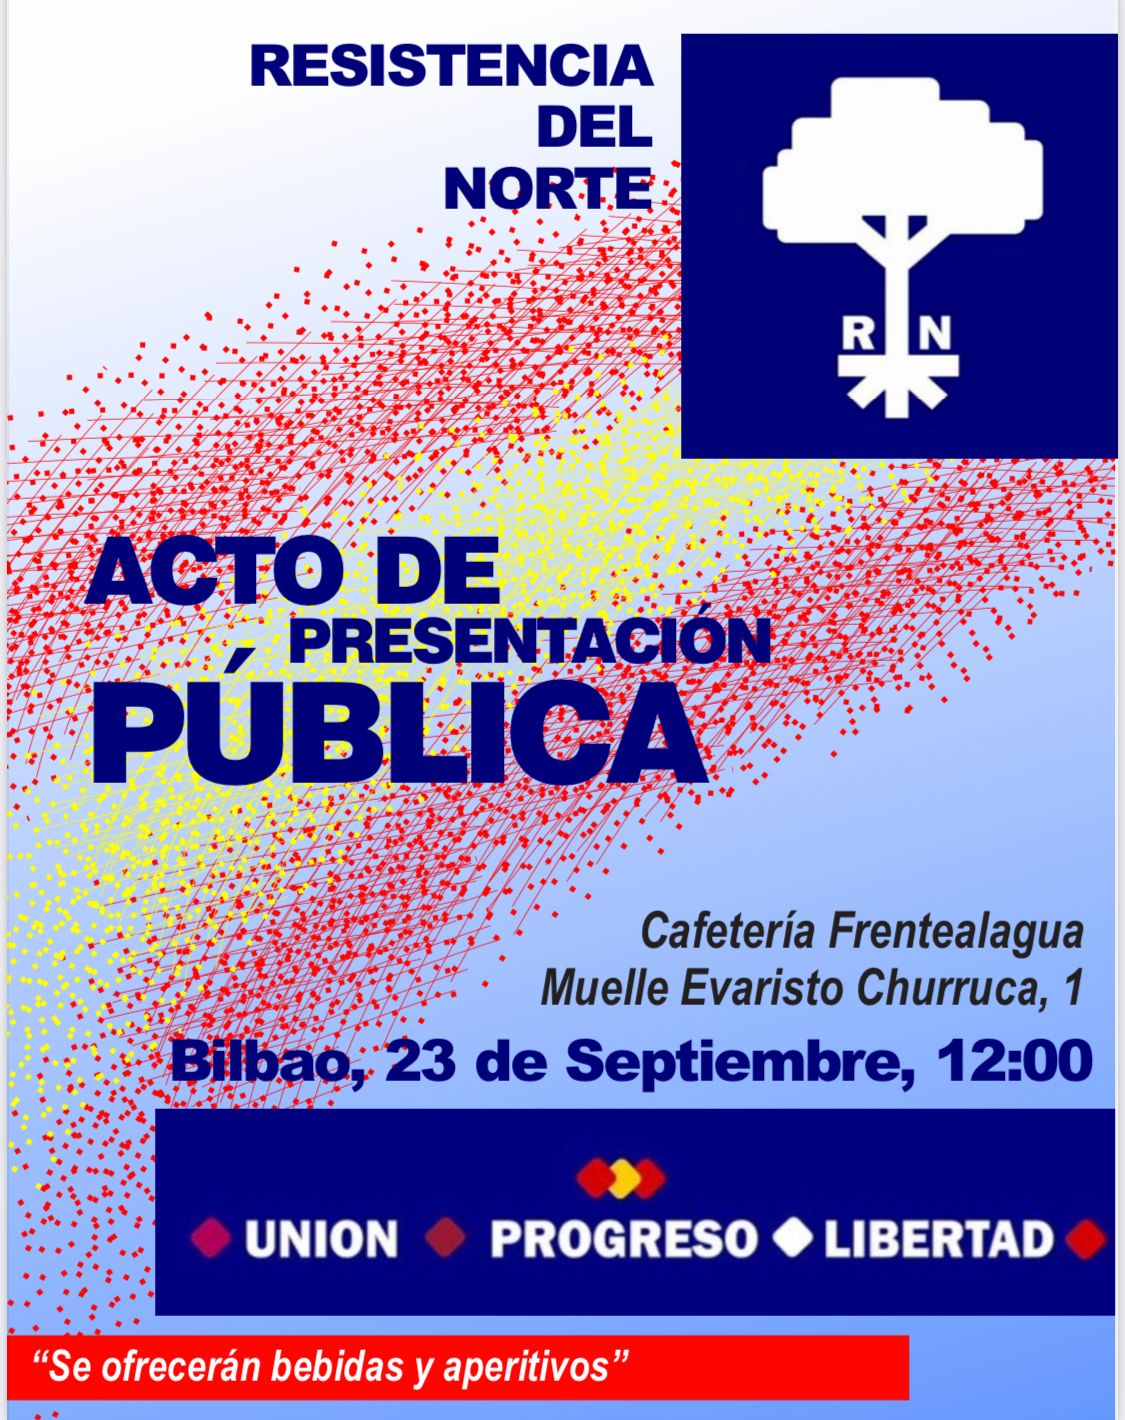 23-S: Presentación pública en Bilbao